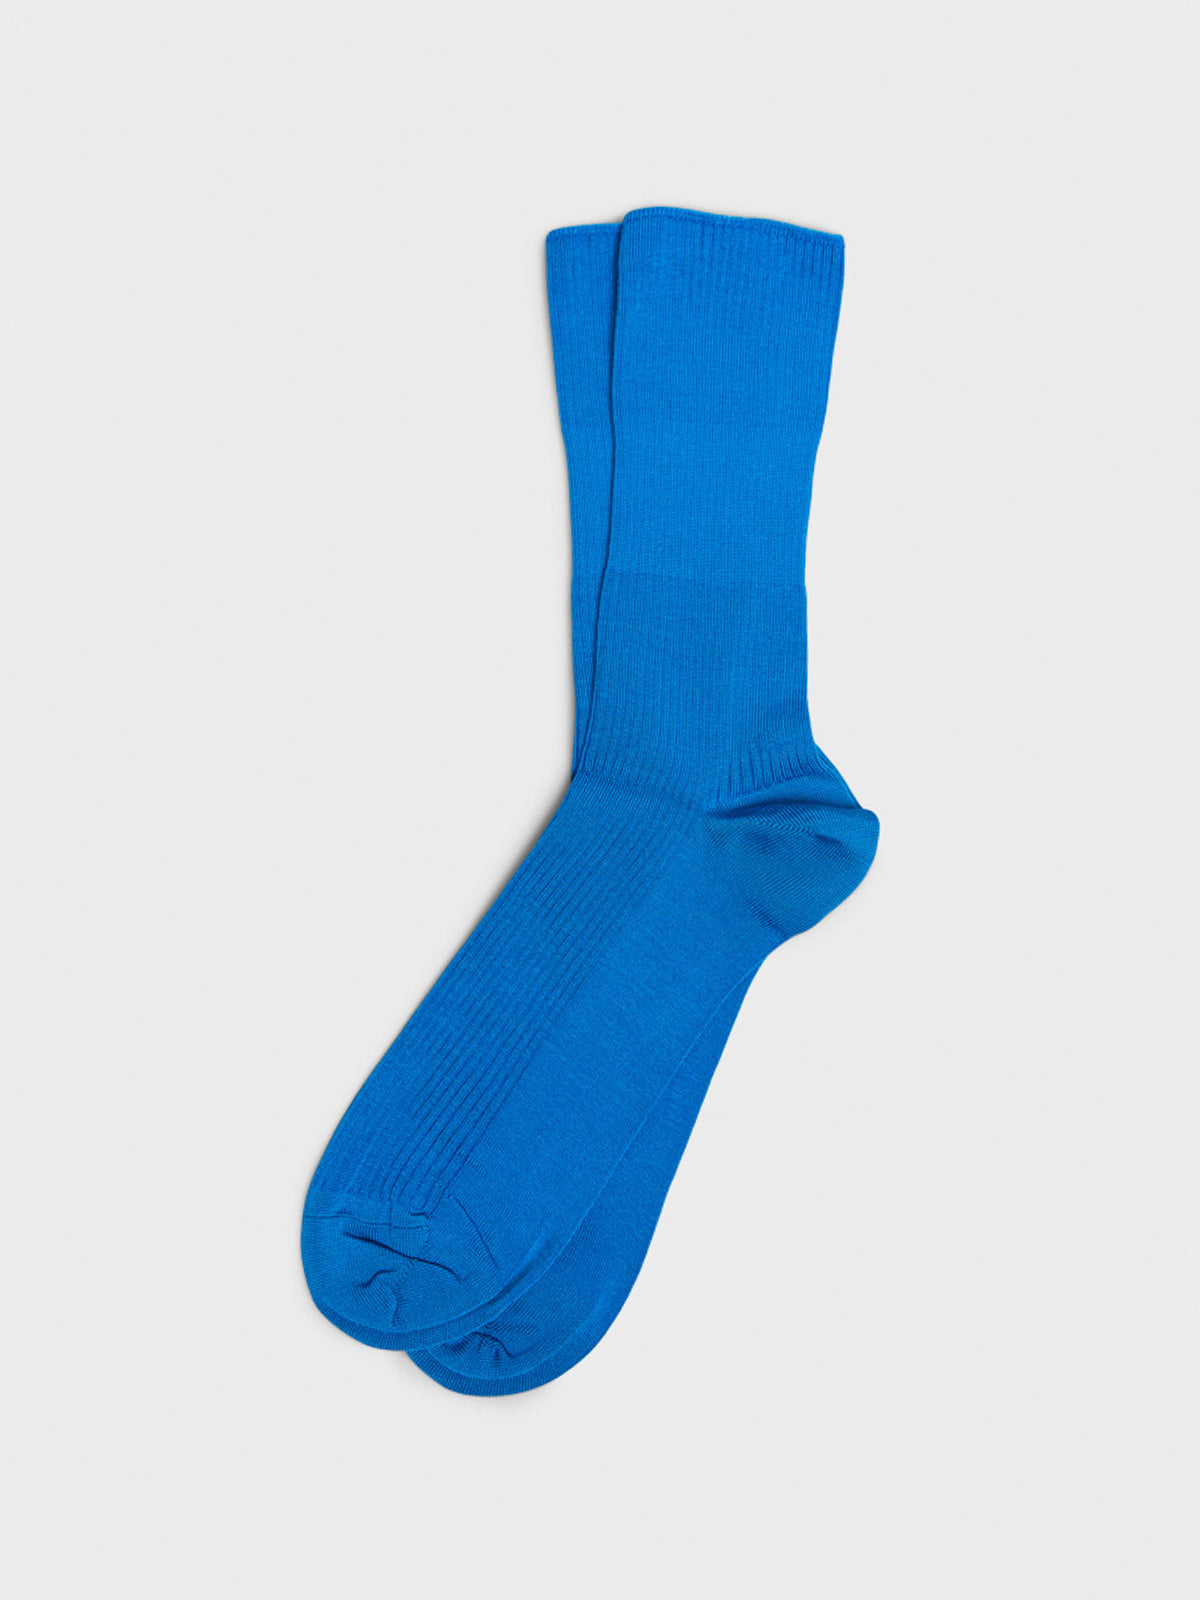 Mrs. Hosiery - Mrs. Supreme Cotton Socks in Pop Blue